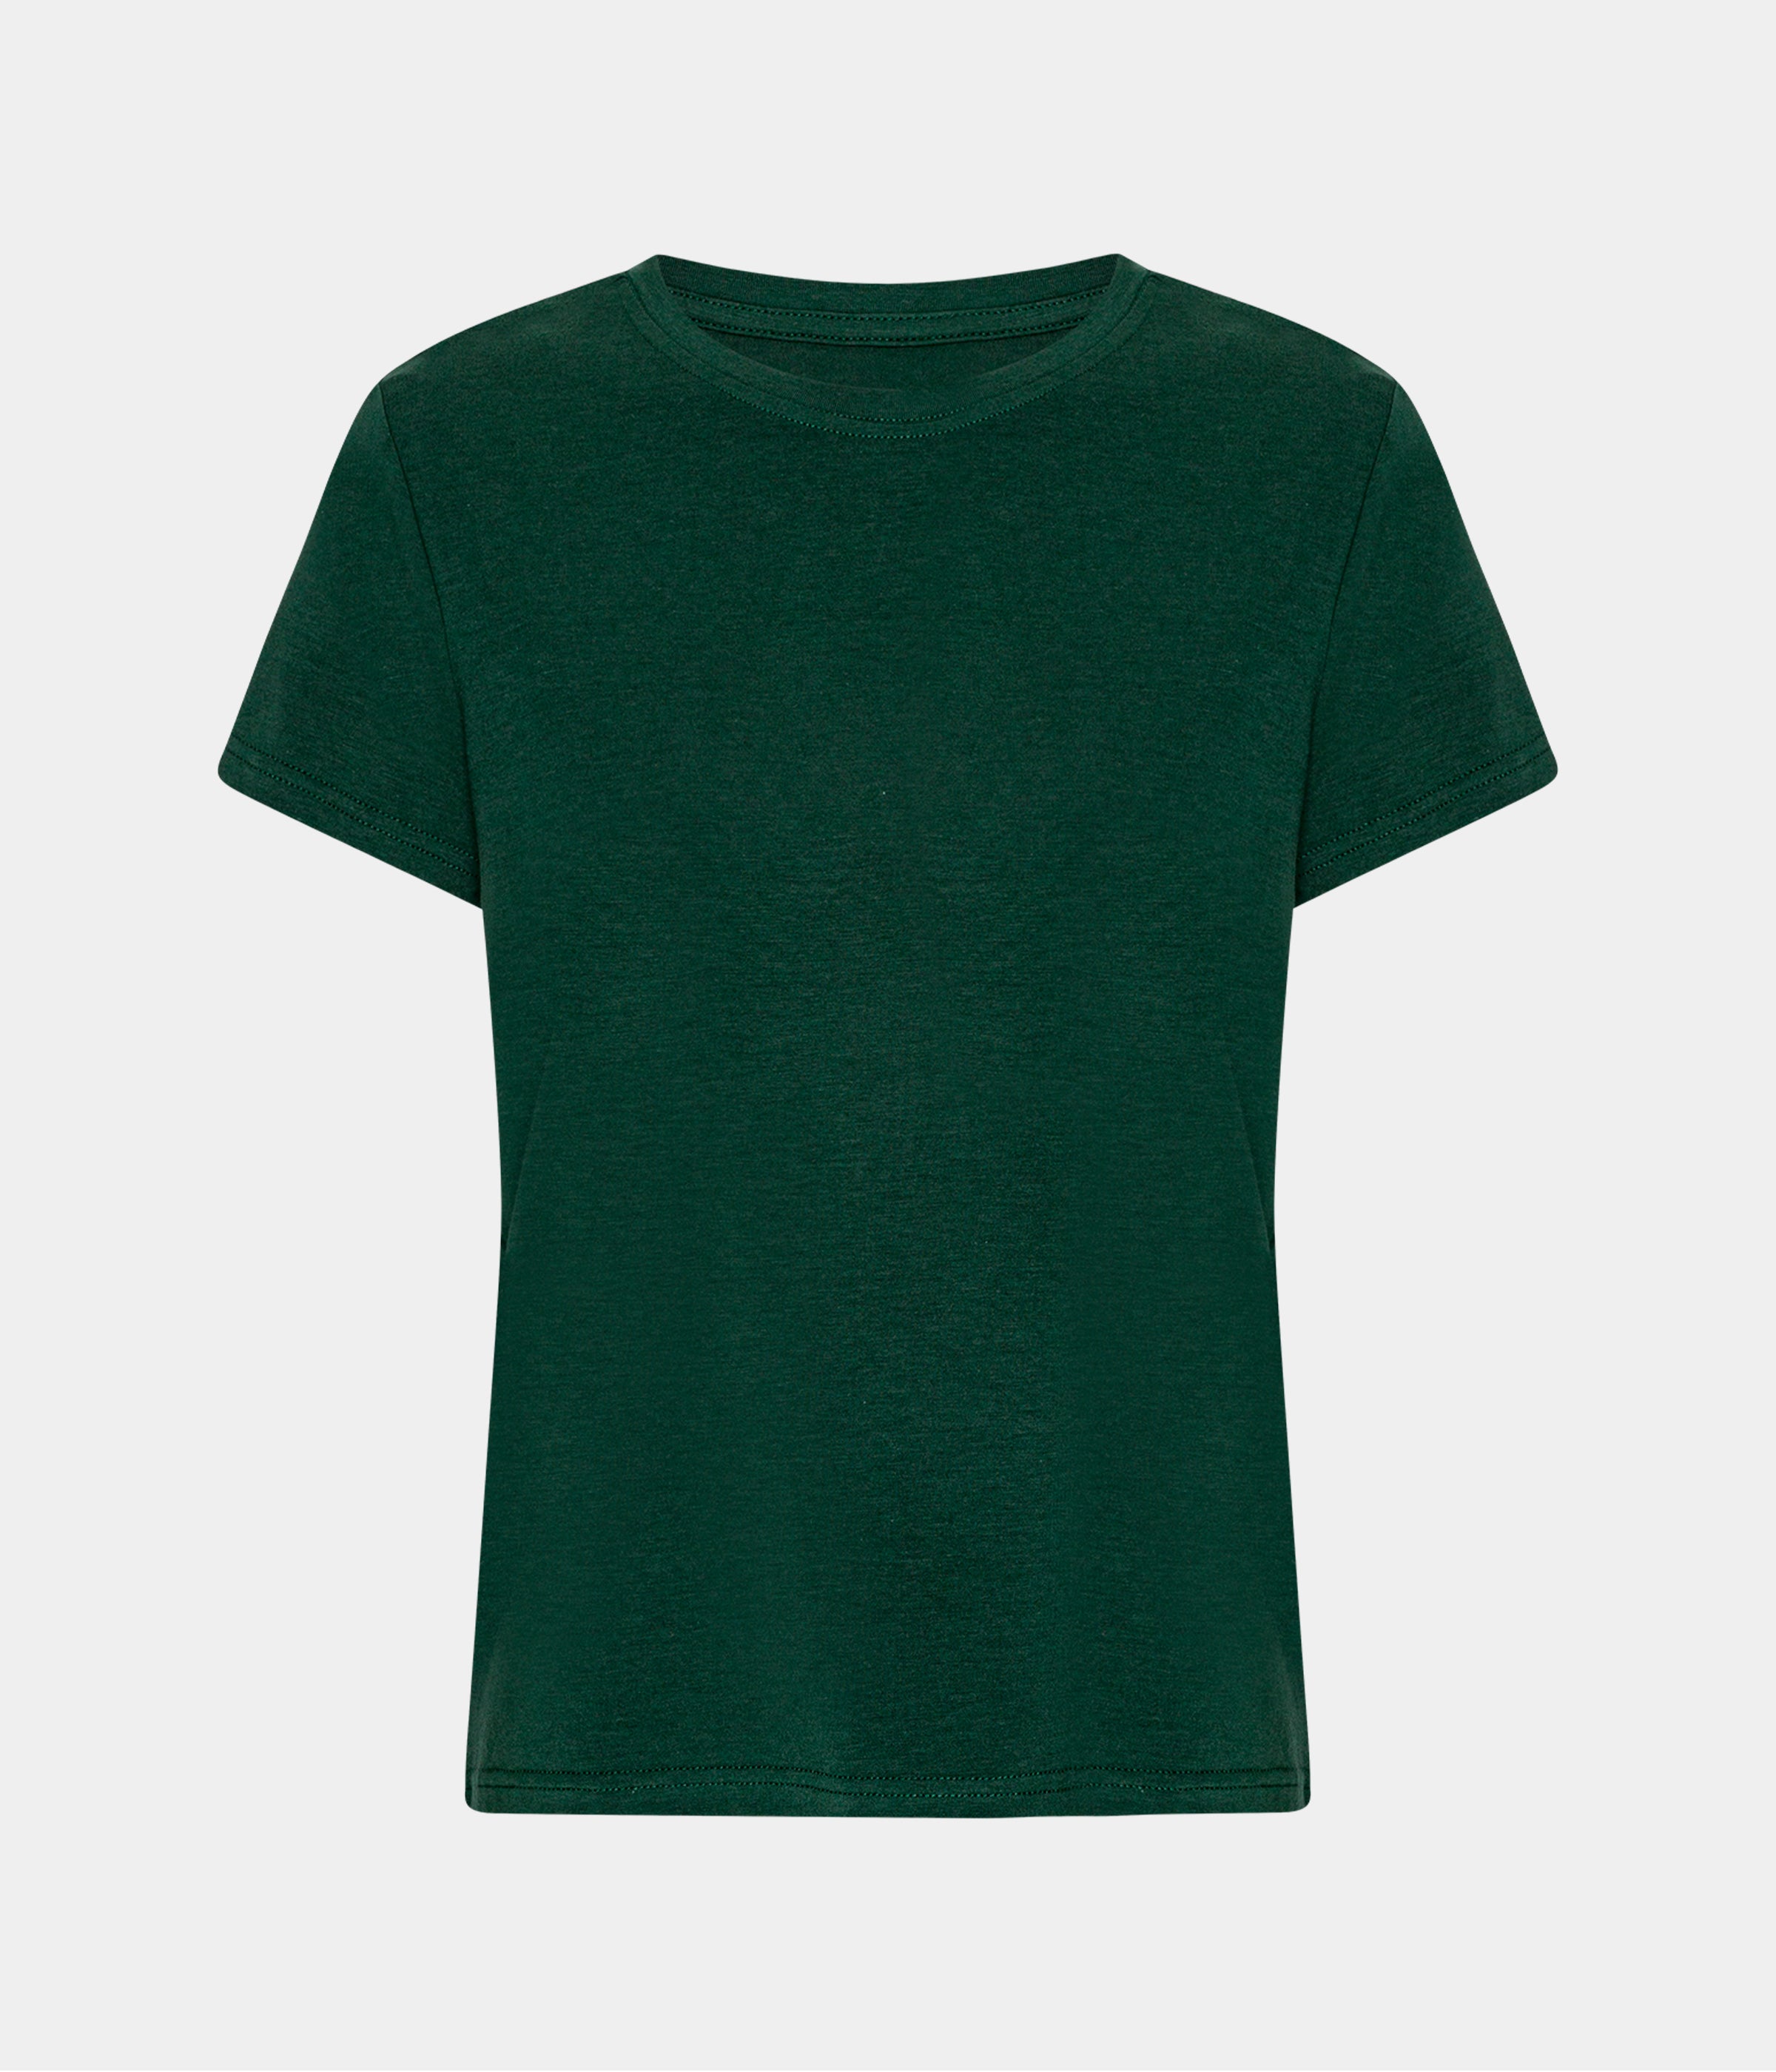 Billede af Mørkegrøn kortærmet bambus T-shirt til dame fra Copenhagen Bamboo, S